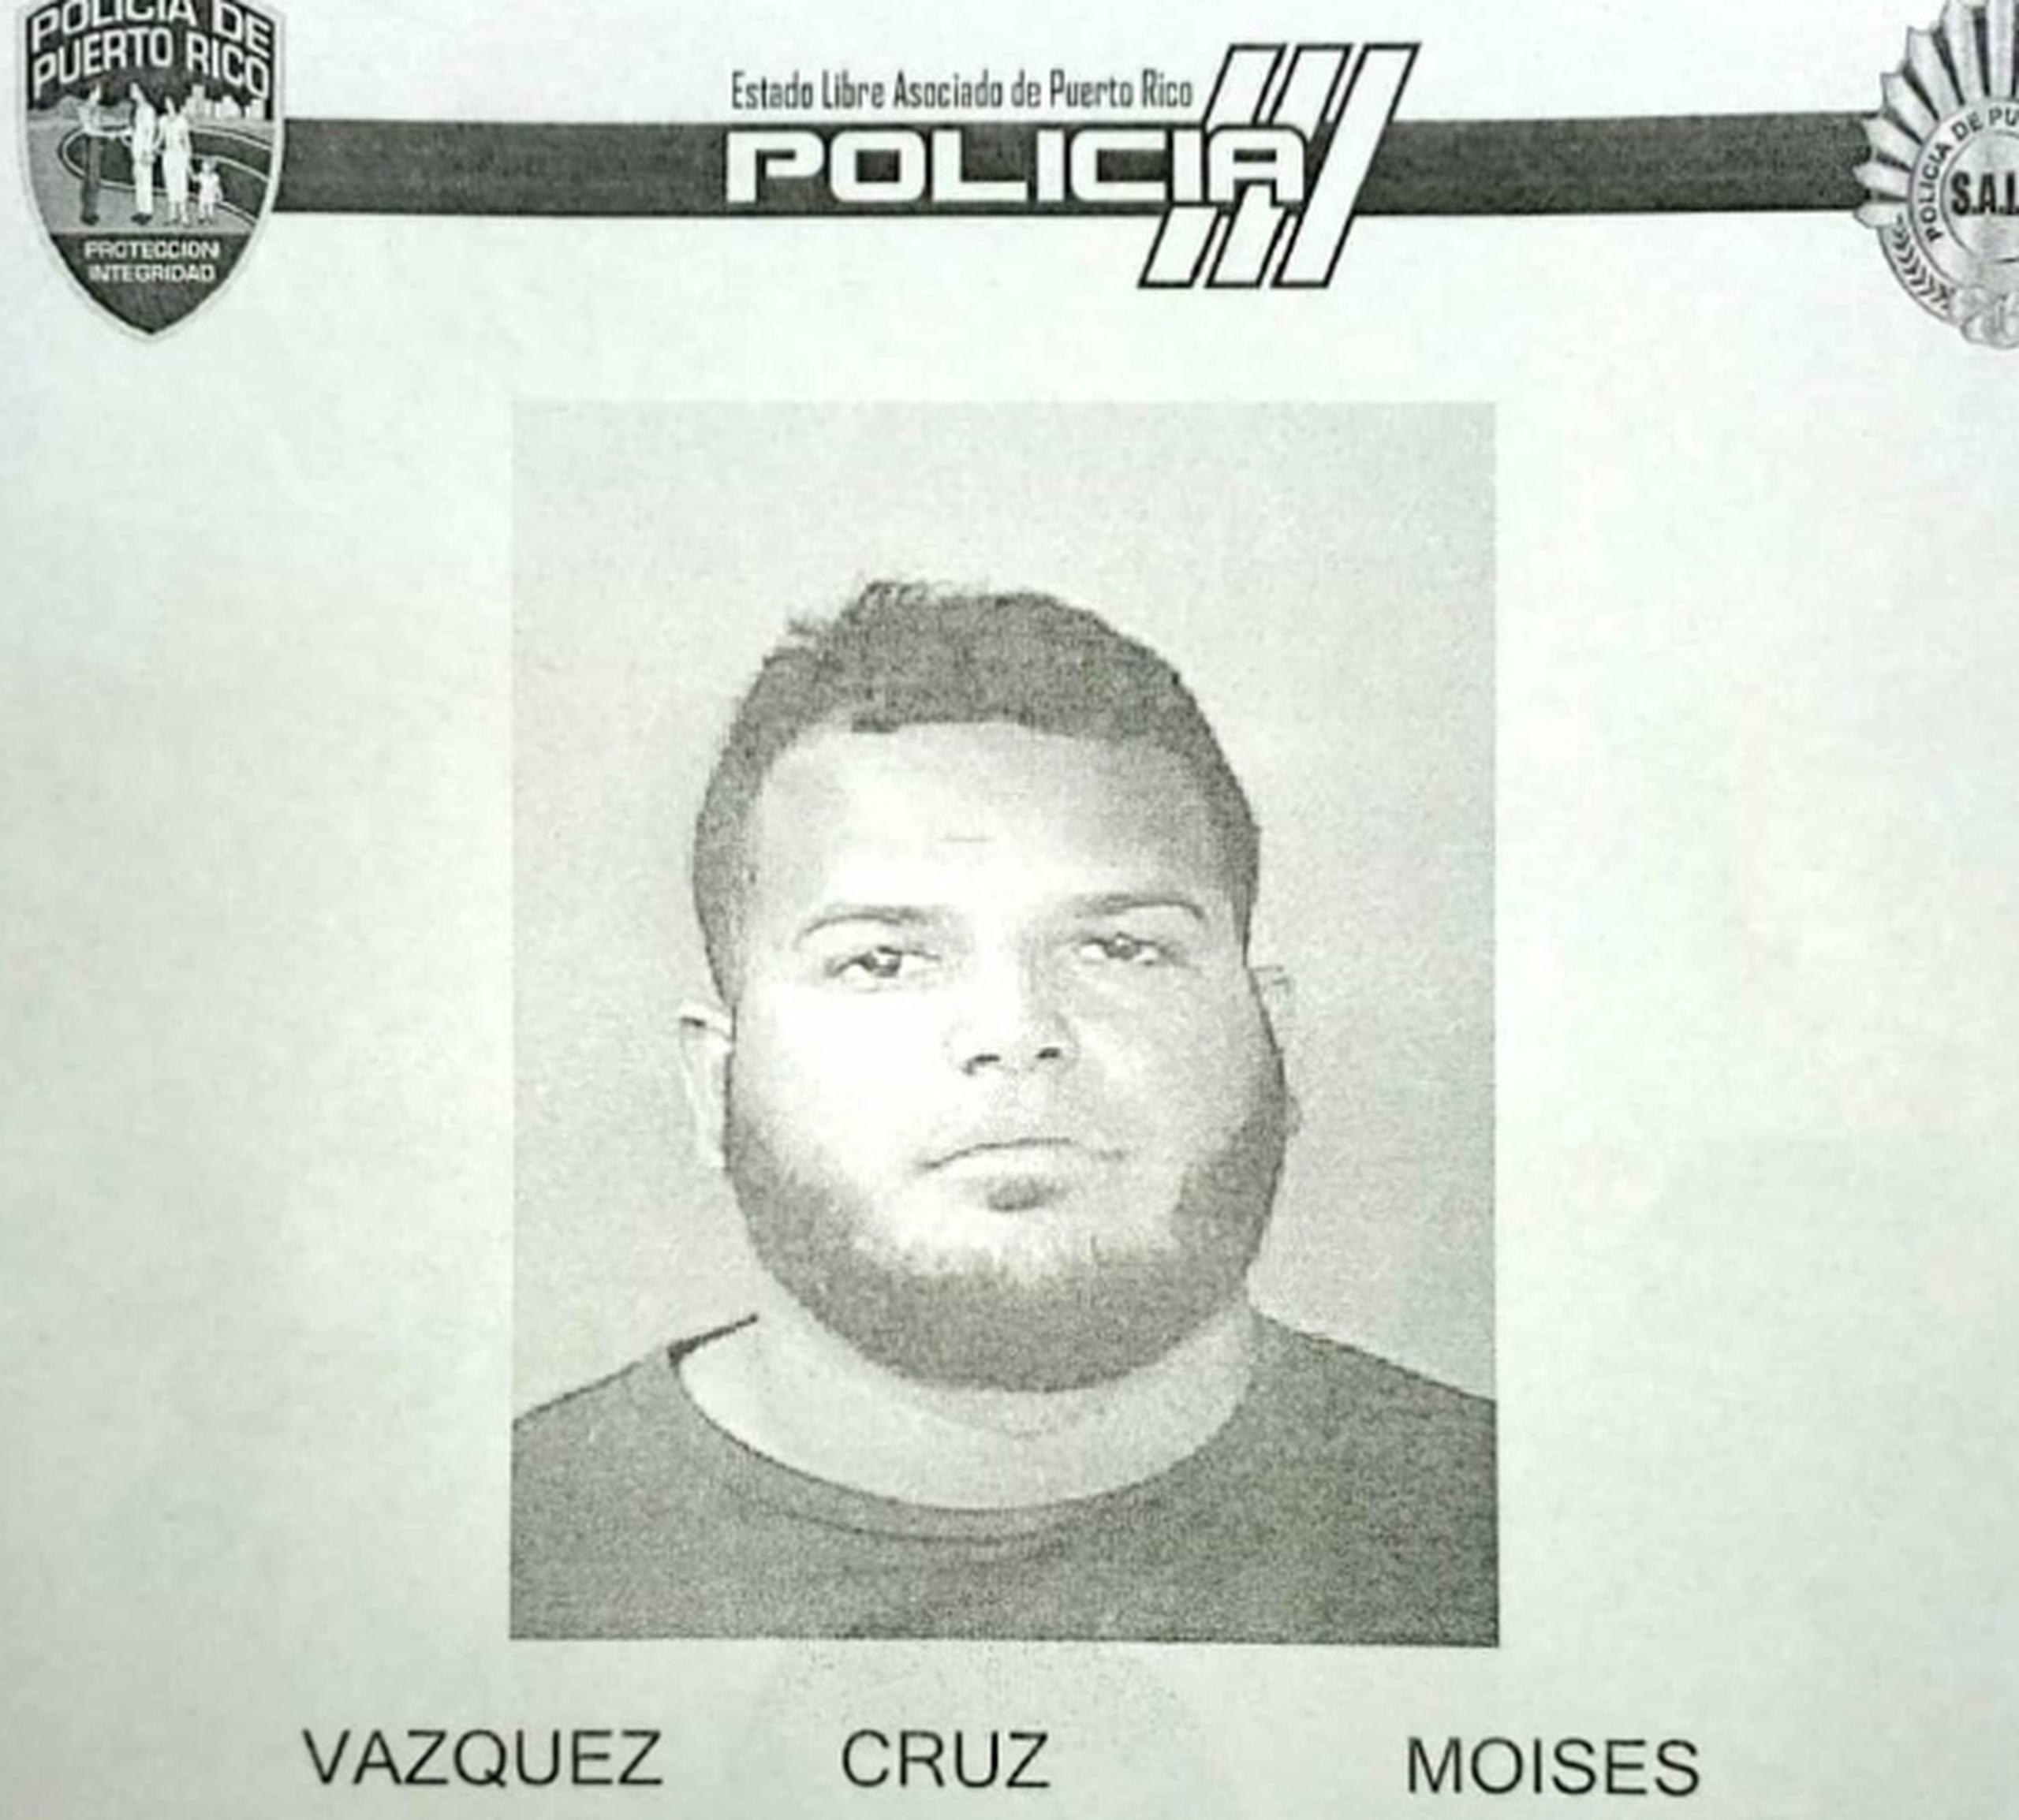 Moisés Vázquez Cruz